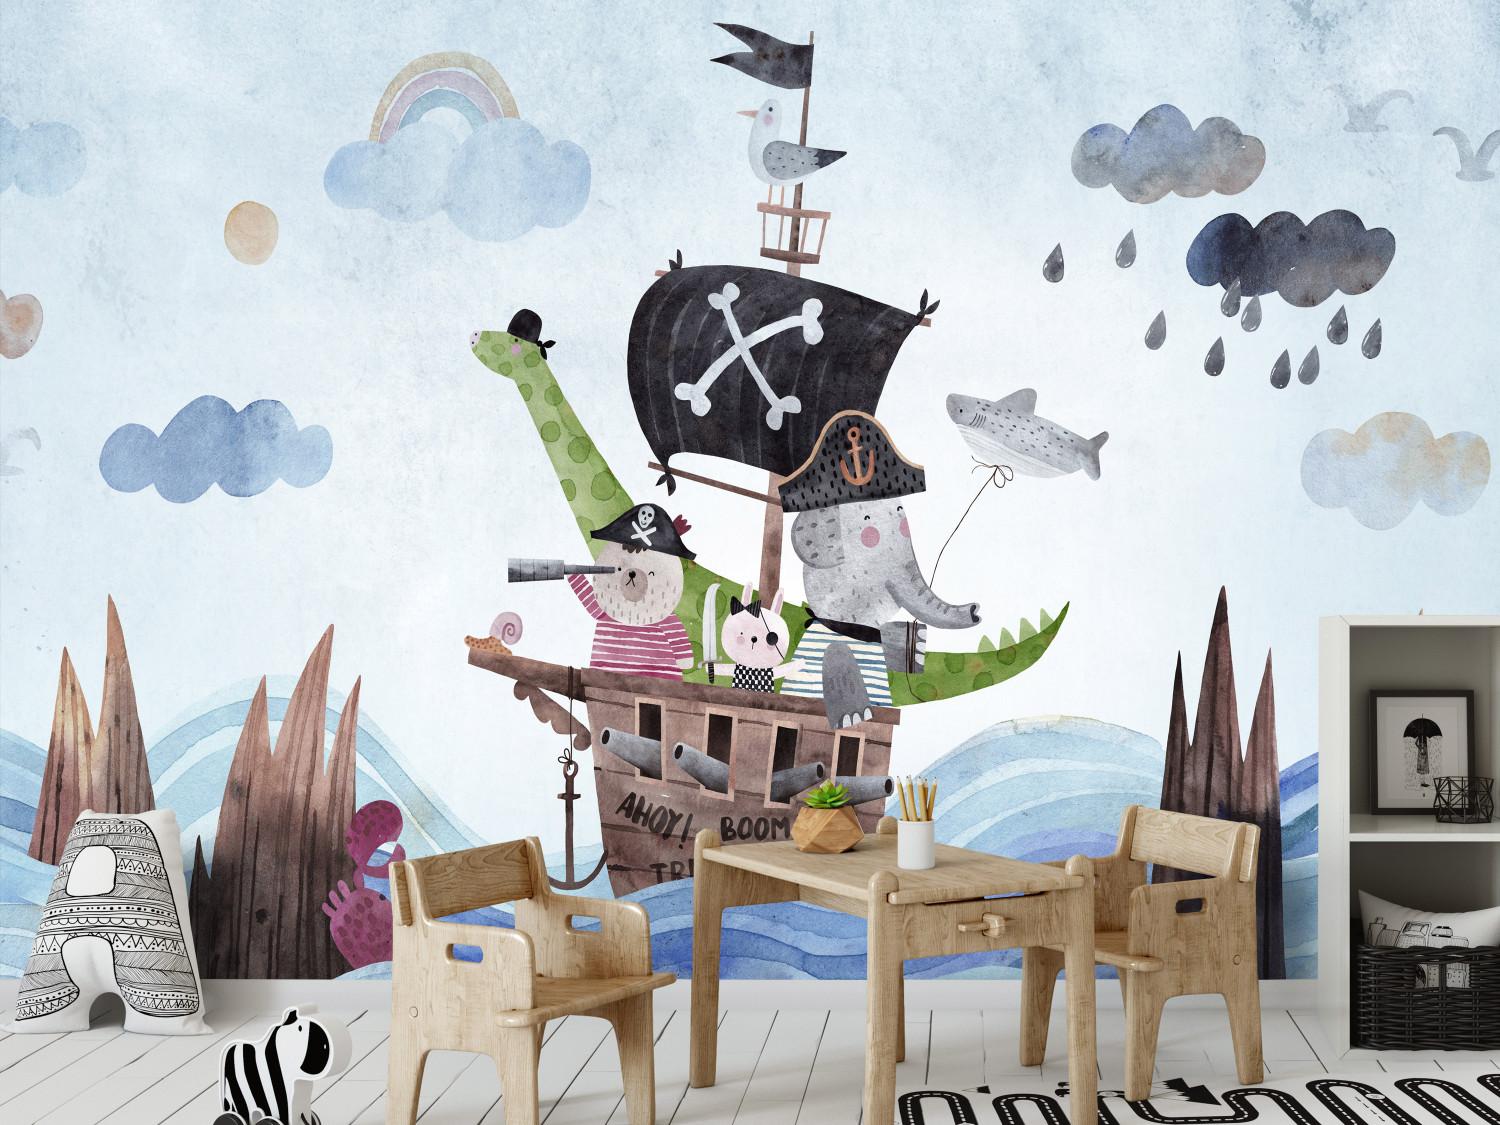 Fotomural decorativo Aventura en el mar - barco pirata pintado con animales para niños